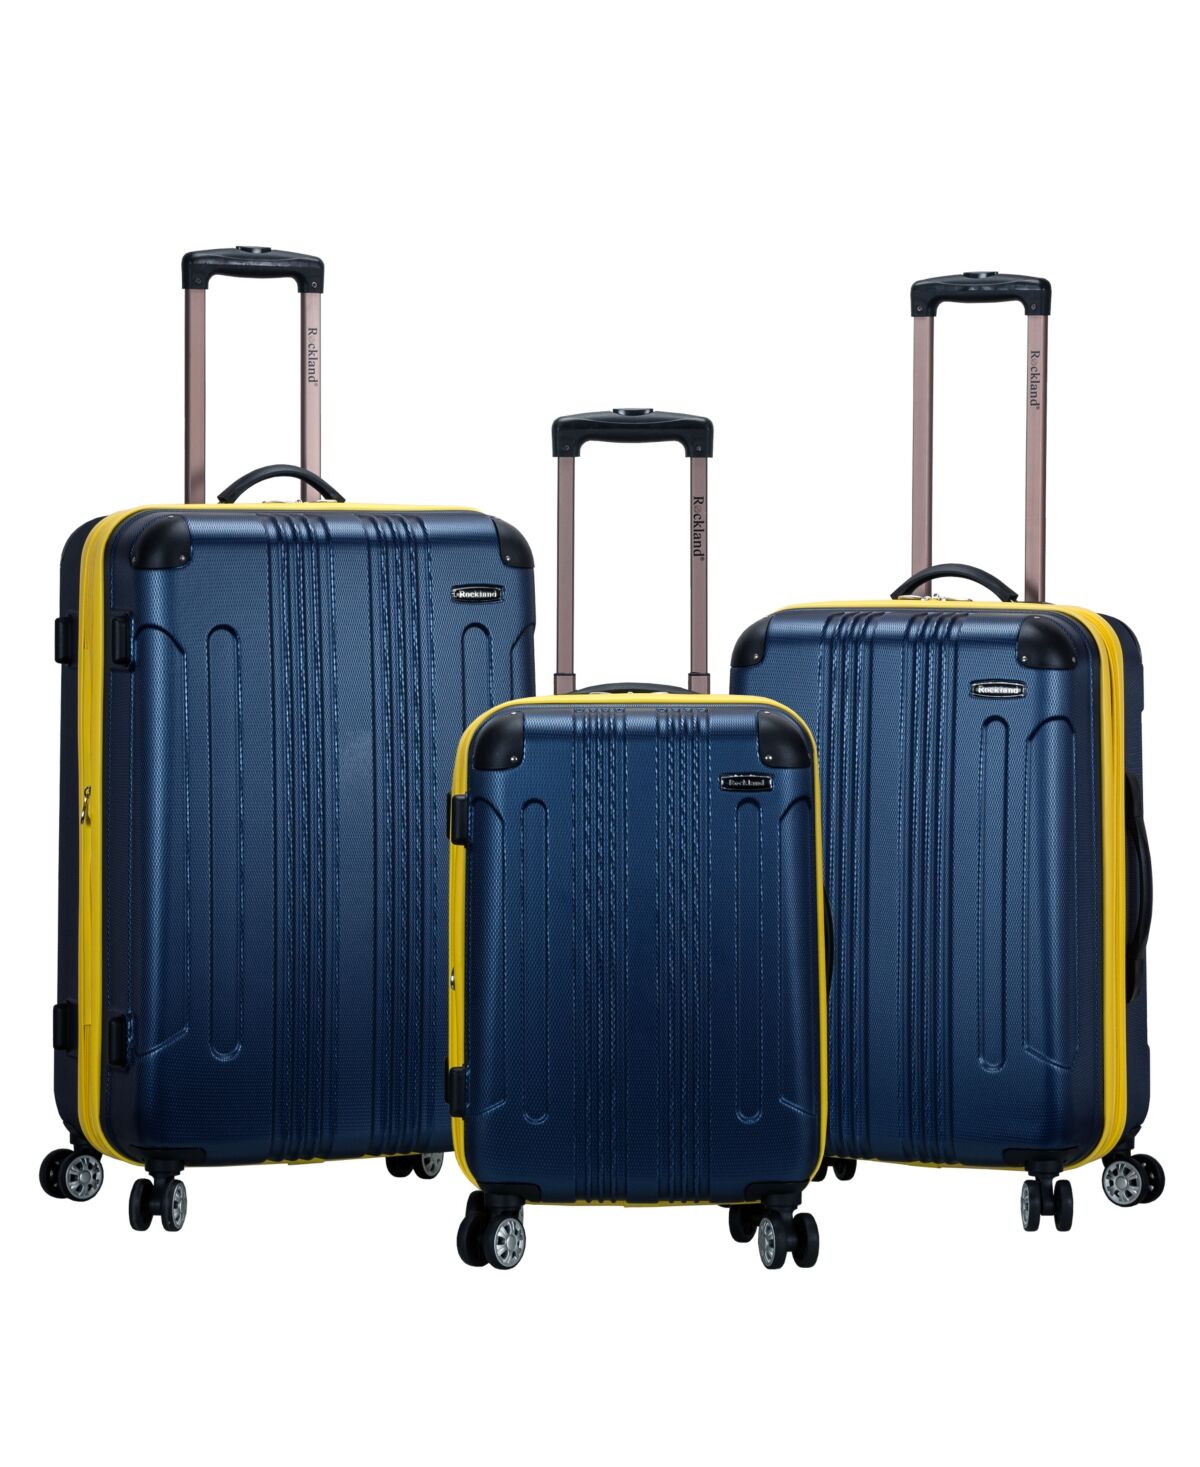 Rockland Sonic 3-Pc. Hardside Luggage Set - Navy